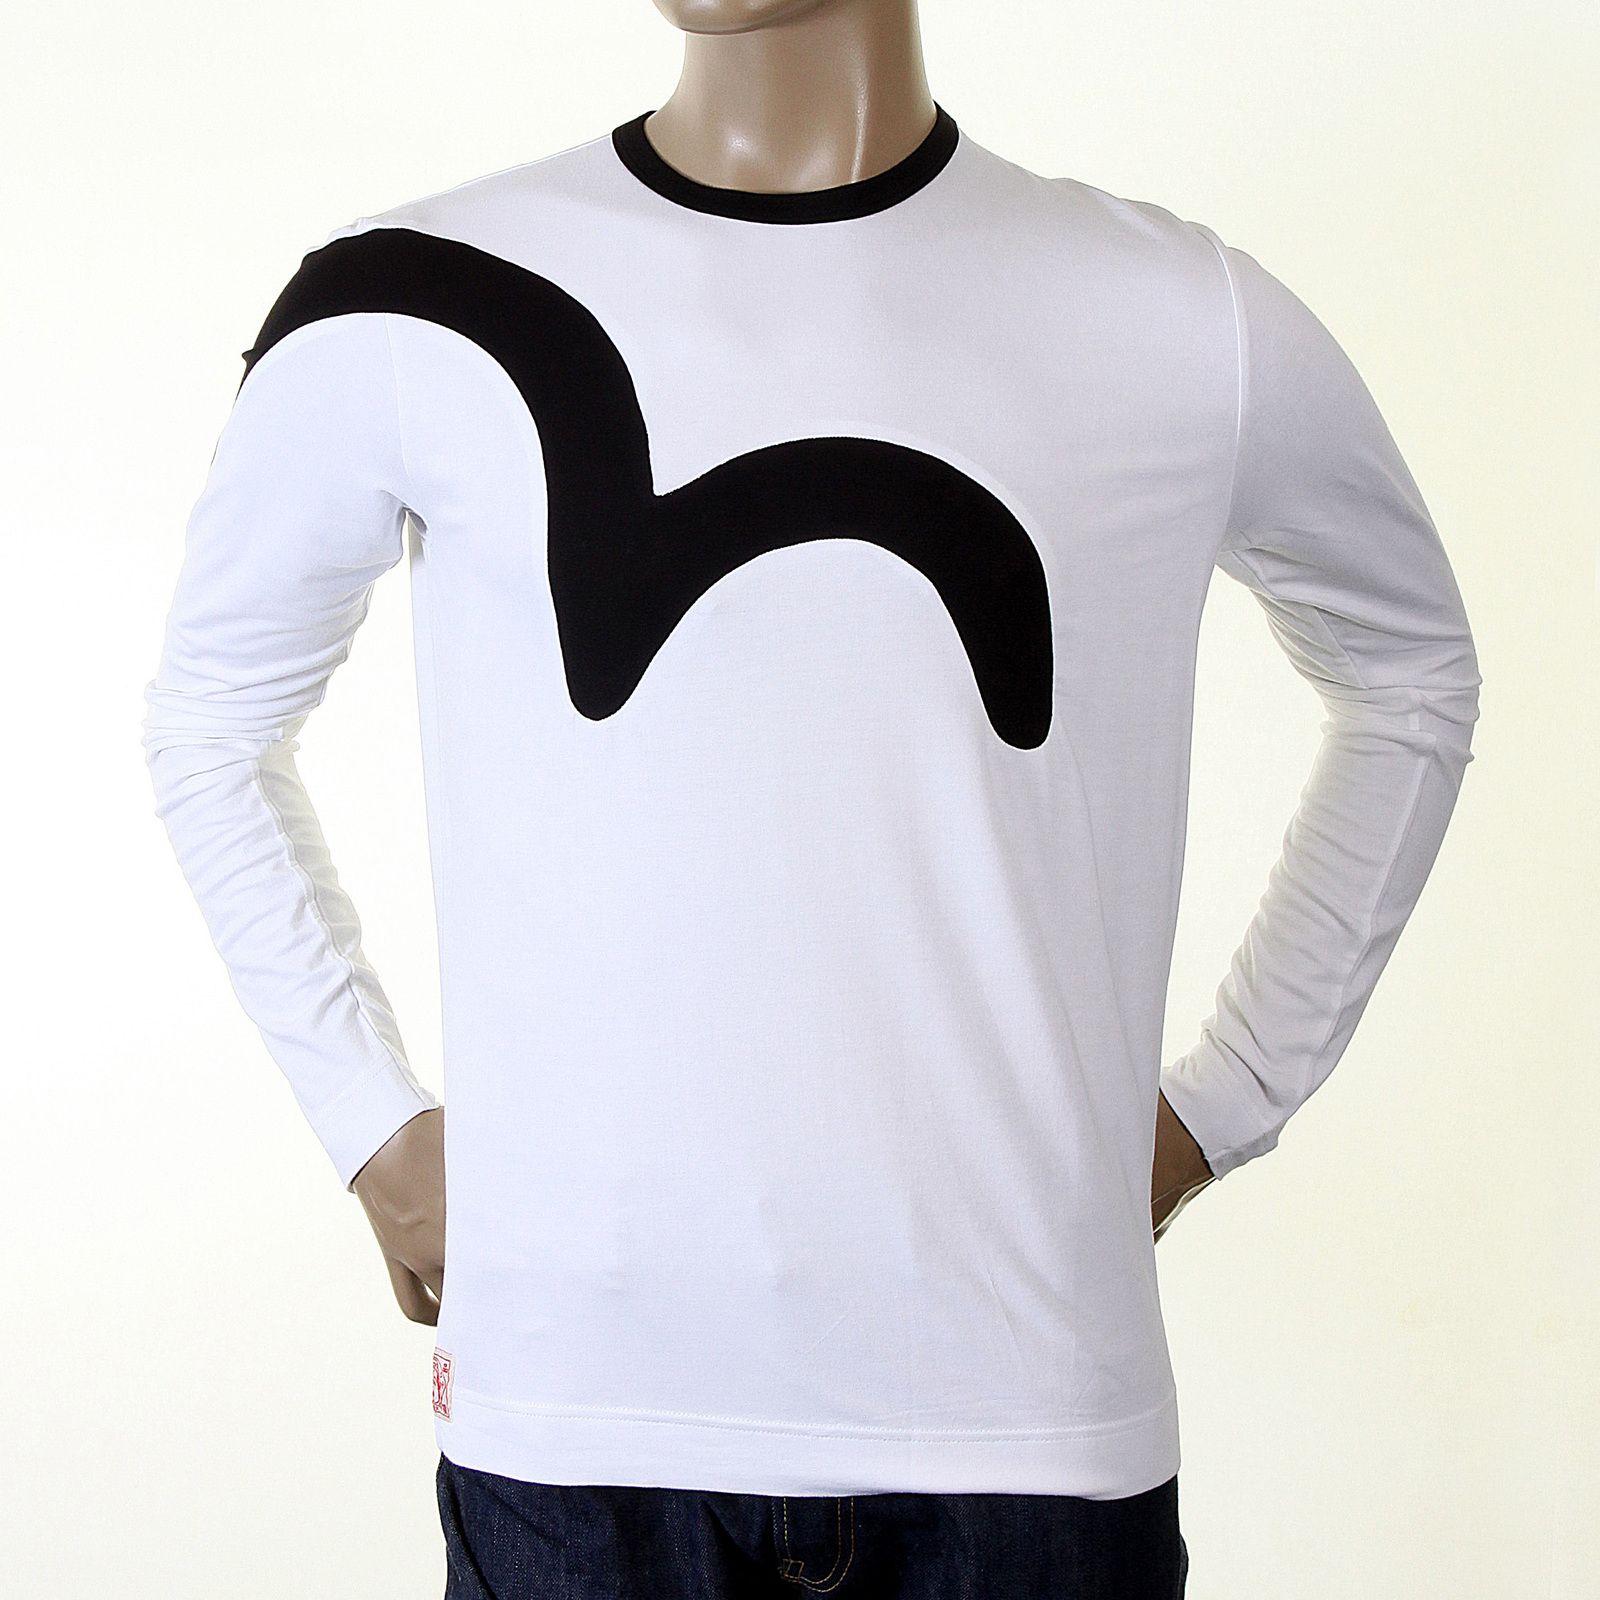 Insert Logo - Buy White Coloured Logo Insert Evisu T Shirt